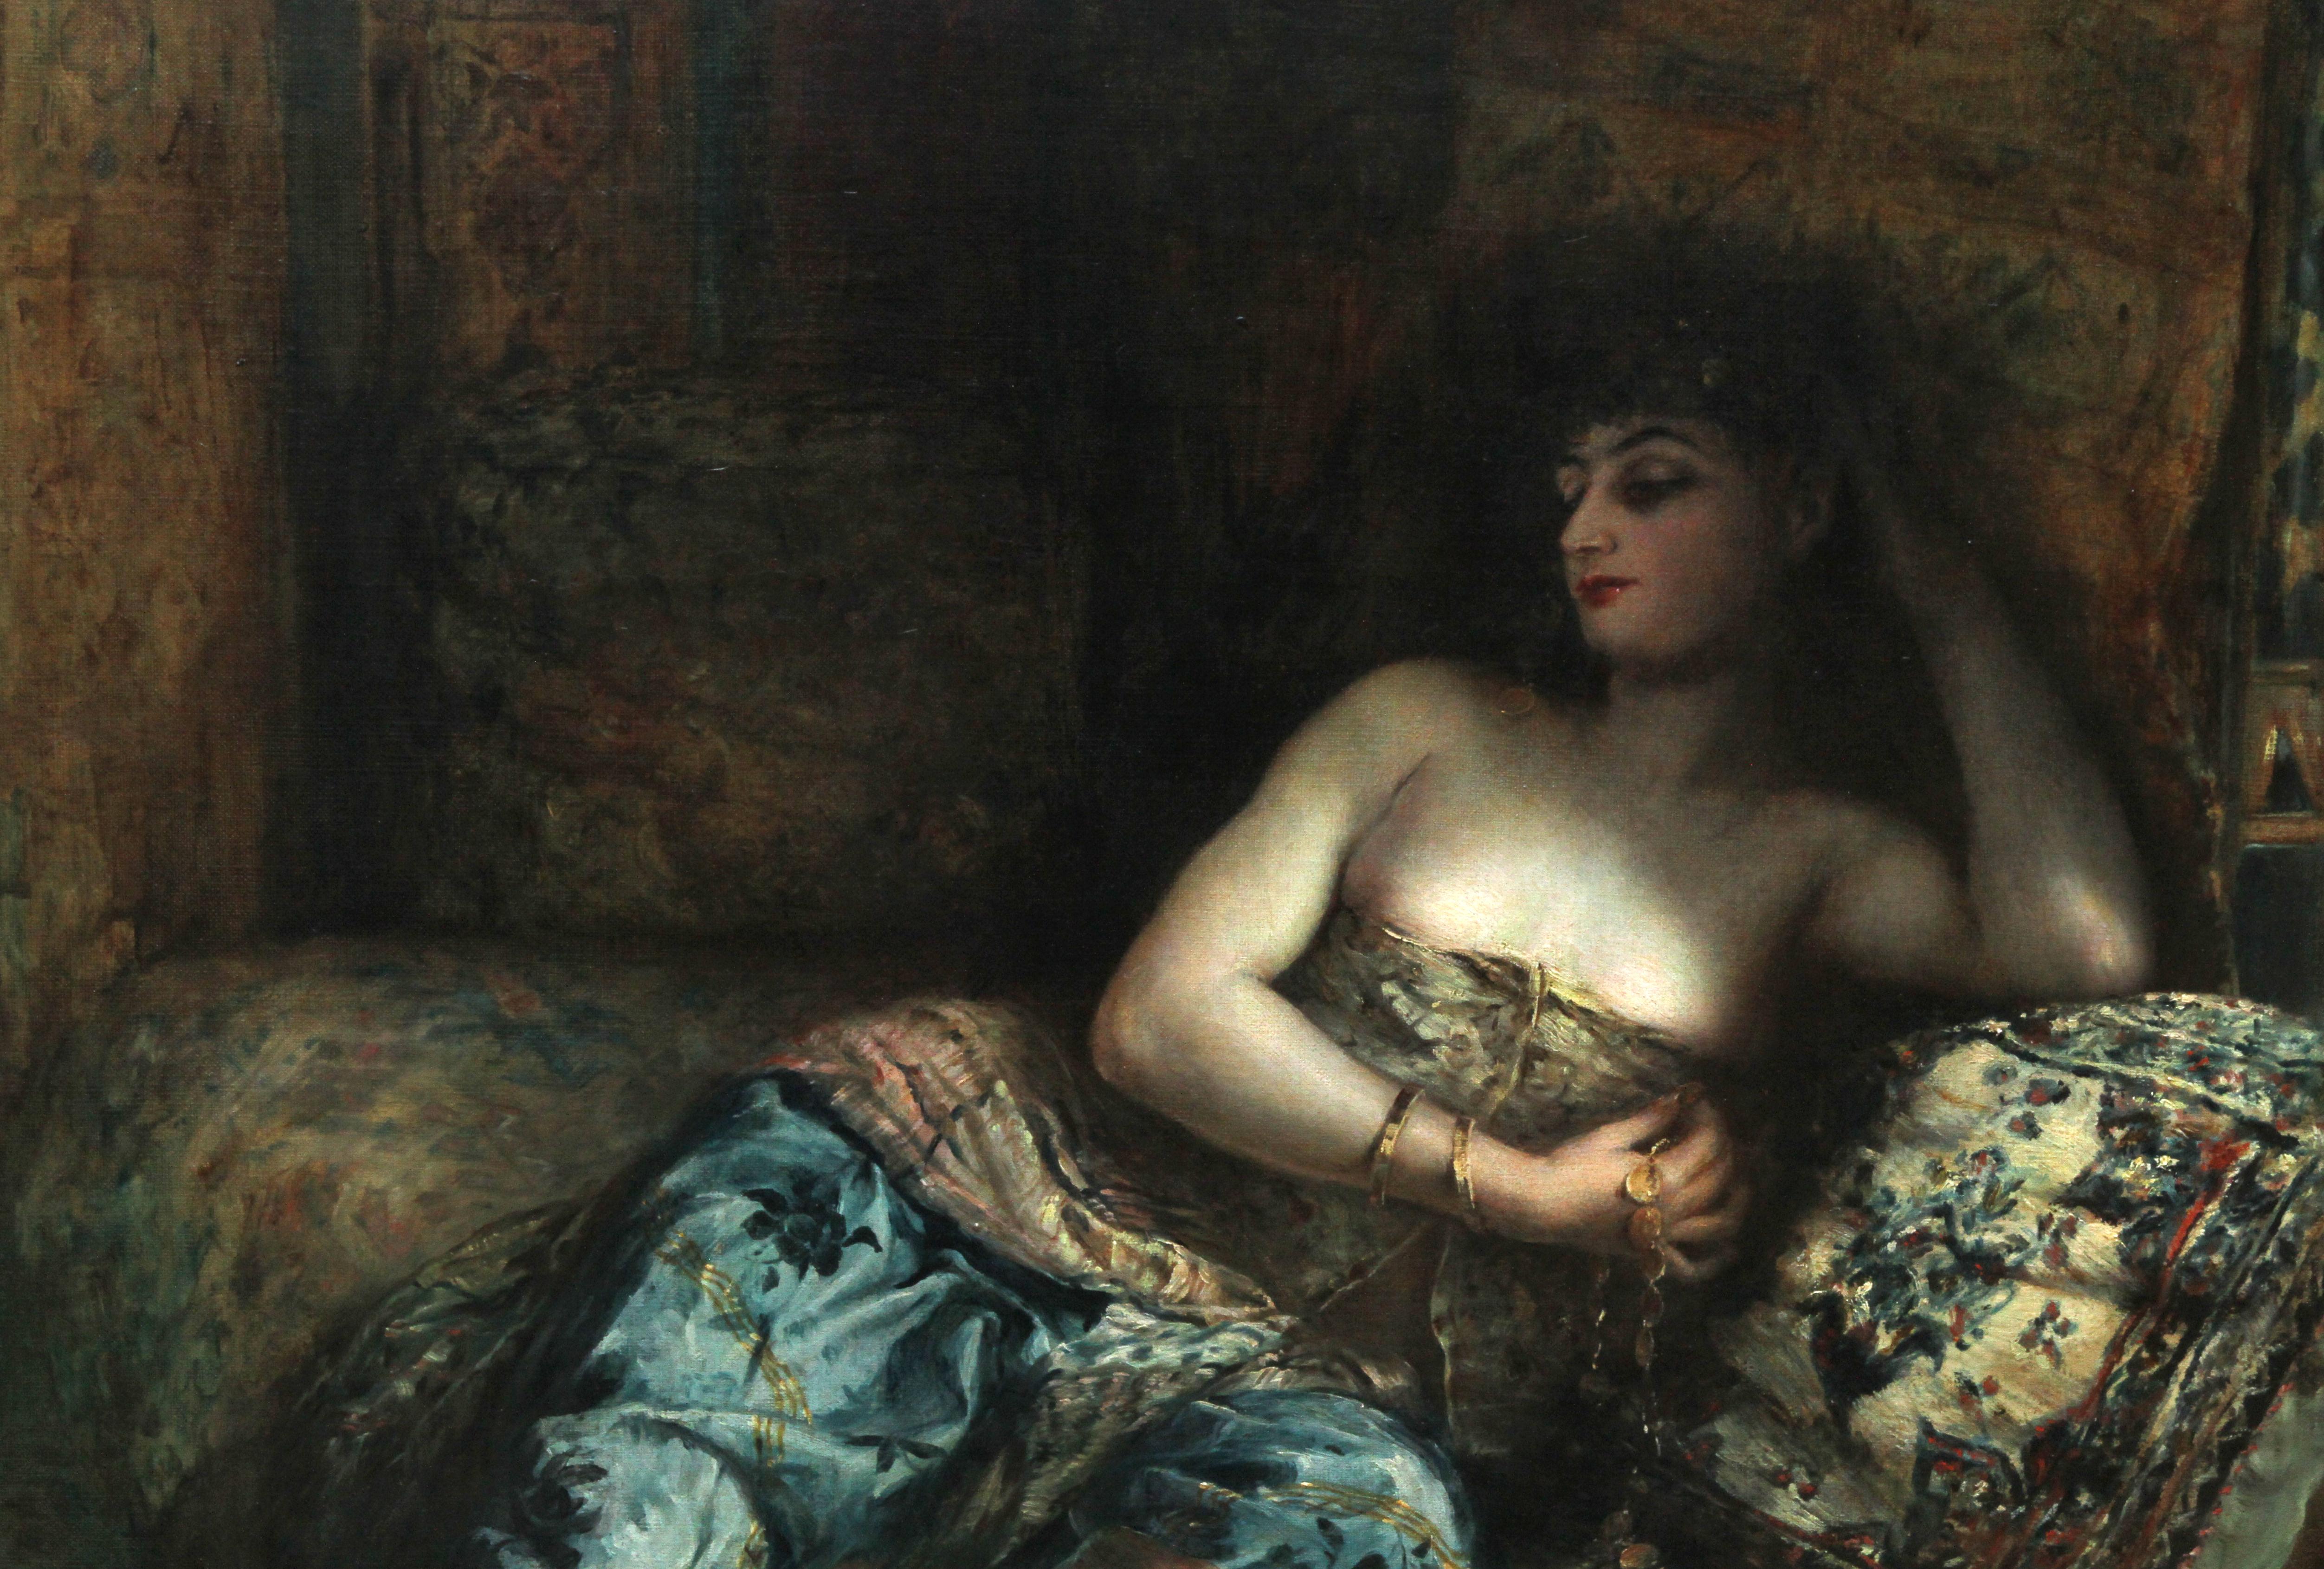 Dieses charmante ex Christie's viktorianischen orientalischen Ölgemälde ist von renommierten Französisch ausgestellten Künstler Lucien Laurent Gsell. Das Gemälde stammt aus der Zeit um 1900 und zeigt eine schöne junge Frau, die auf einer Couch